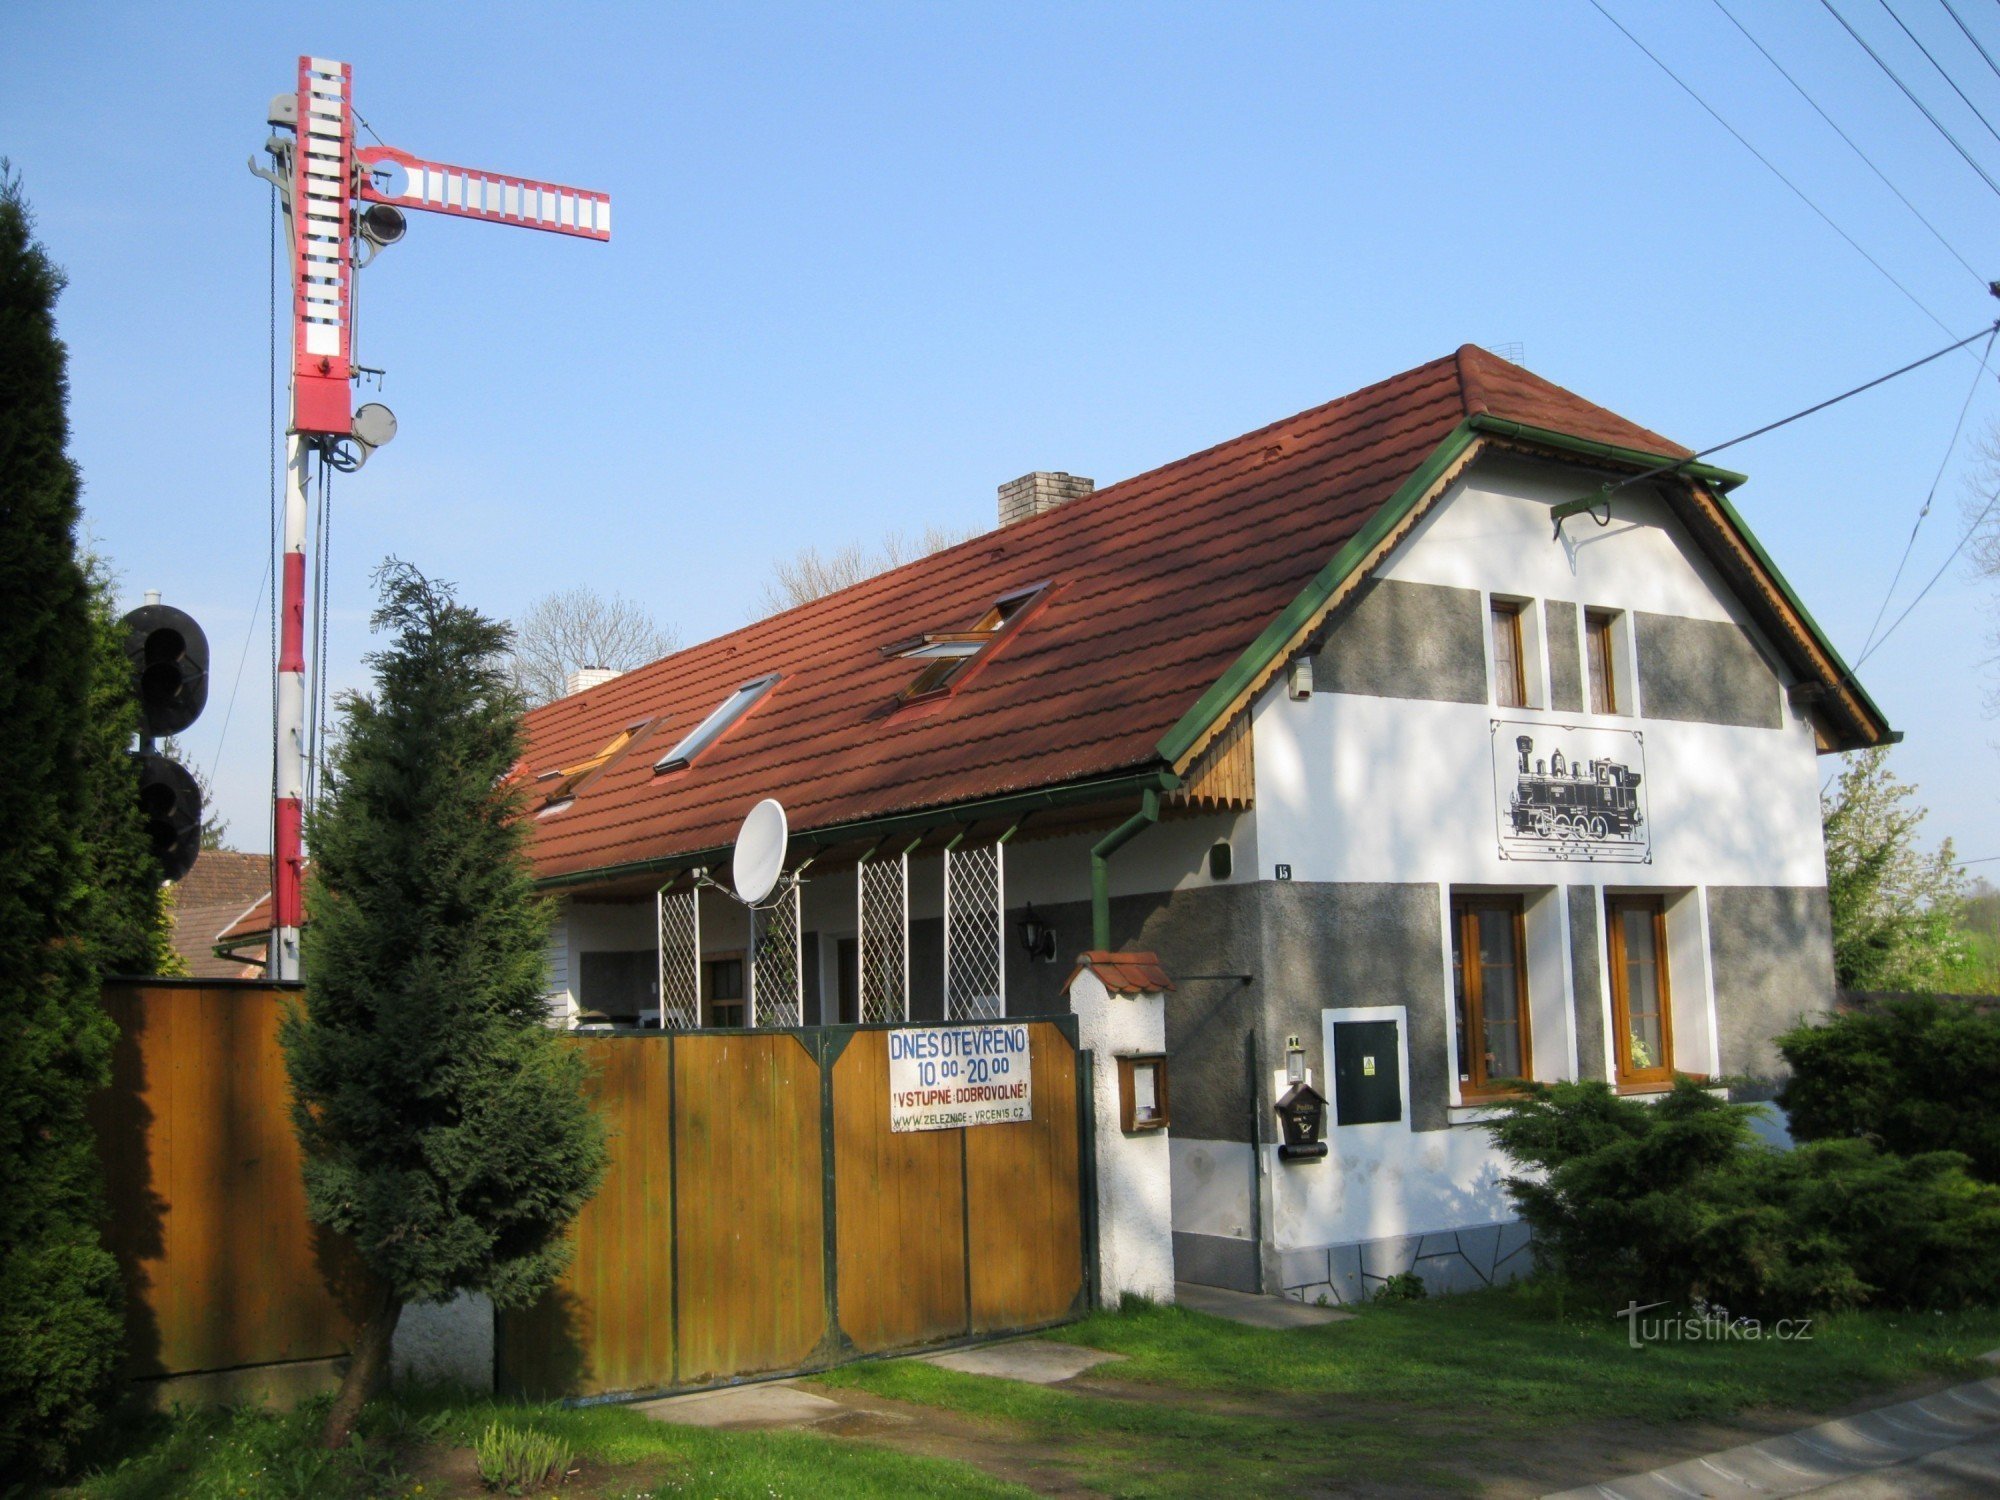 Bahnhof Vrčeň